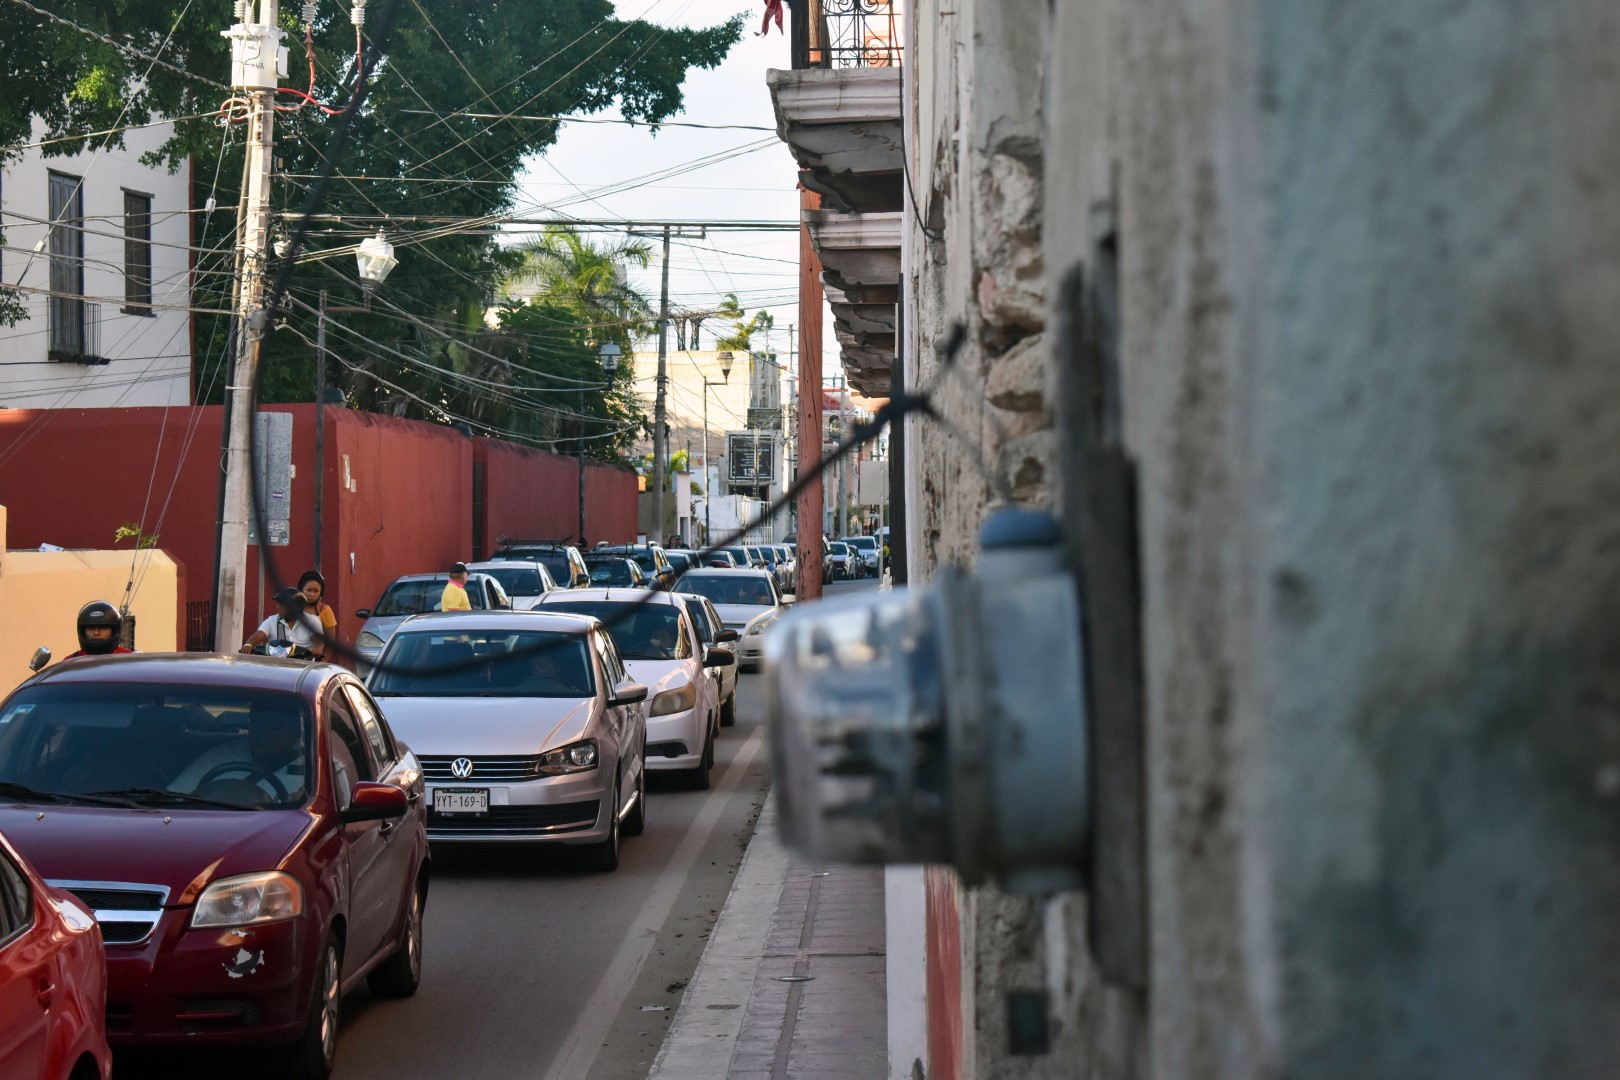 Calle 42, Valladolid, Yucatán